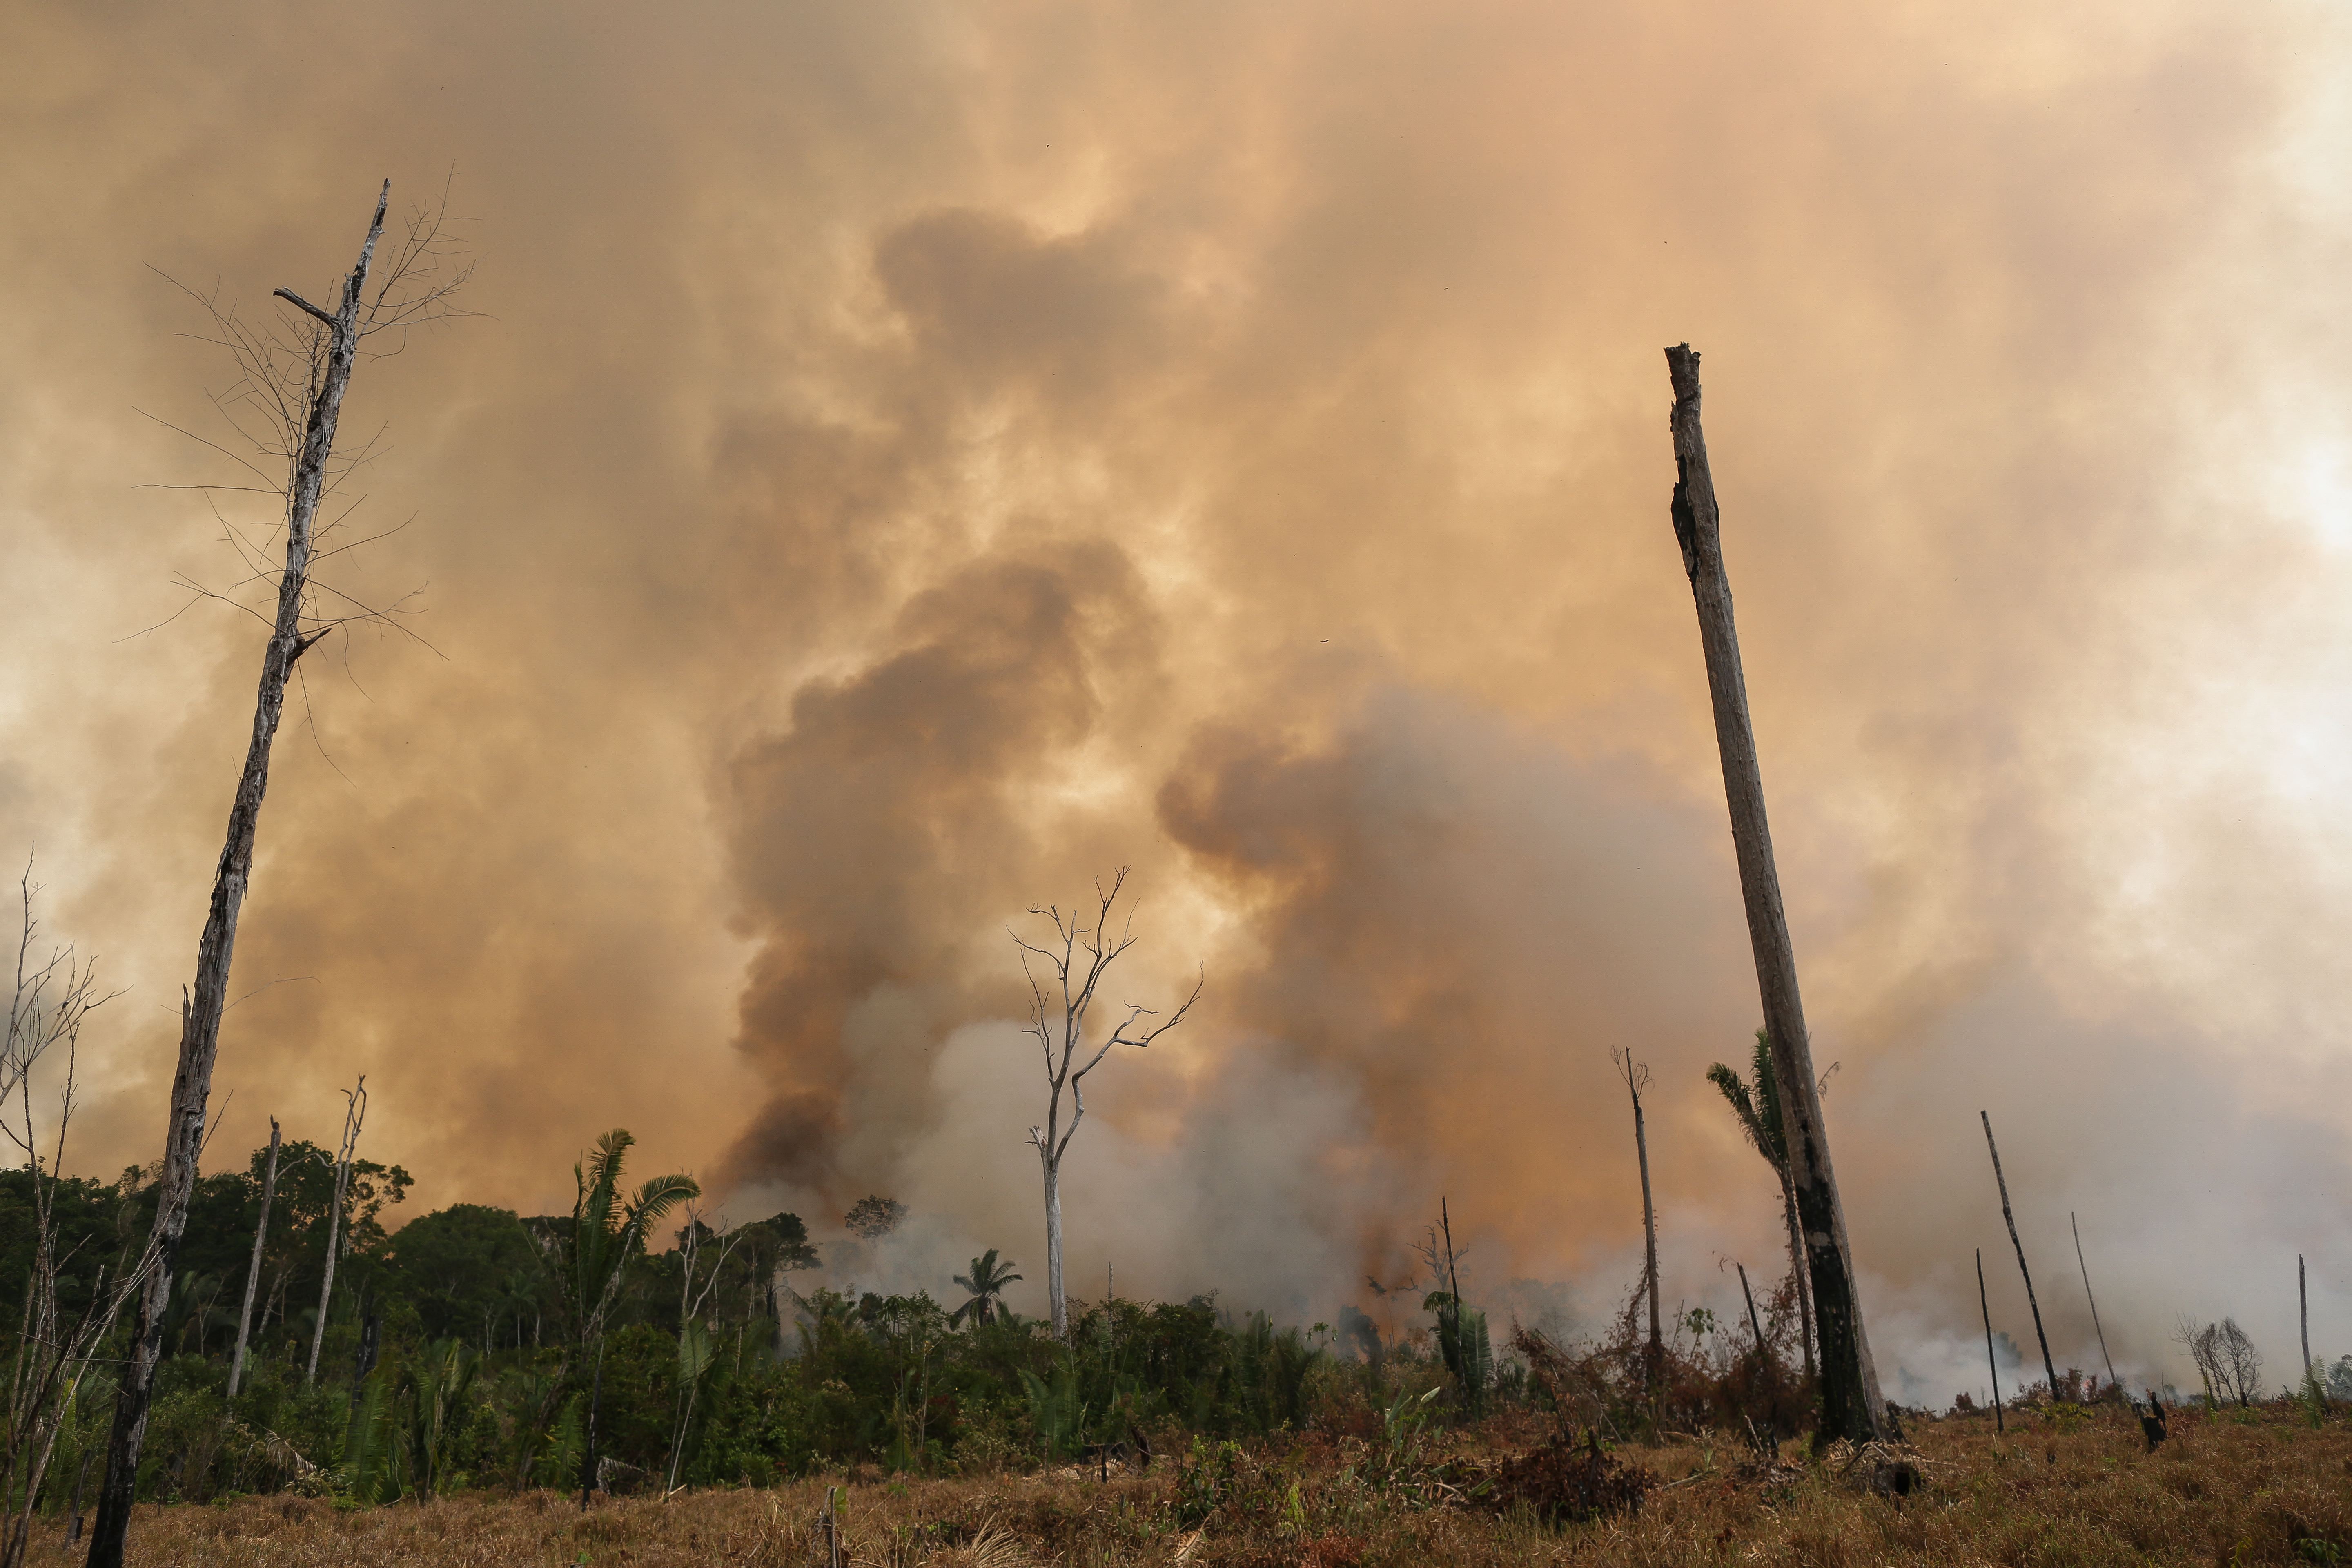 
Entre janeiro e agosto de 2019, a área total atingida pelo fogo foi de 4,3 milhões de hectares apenas na Amazônia brasileira 